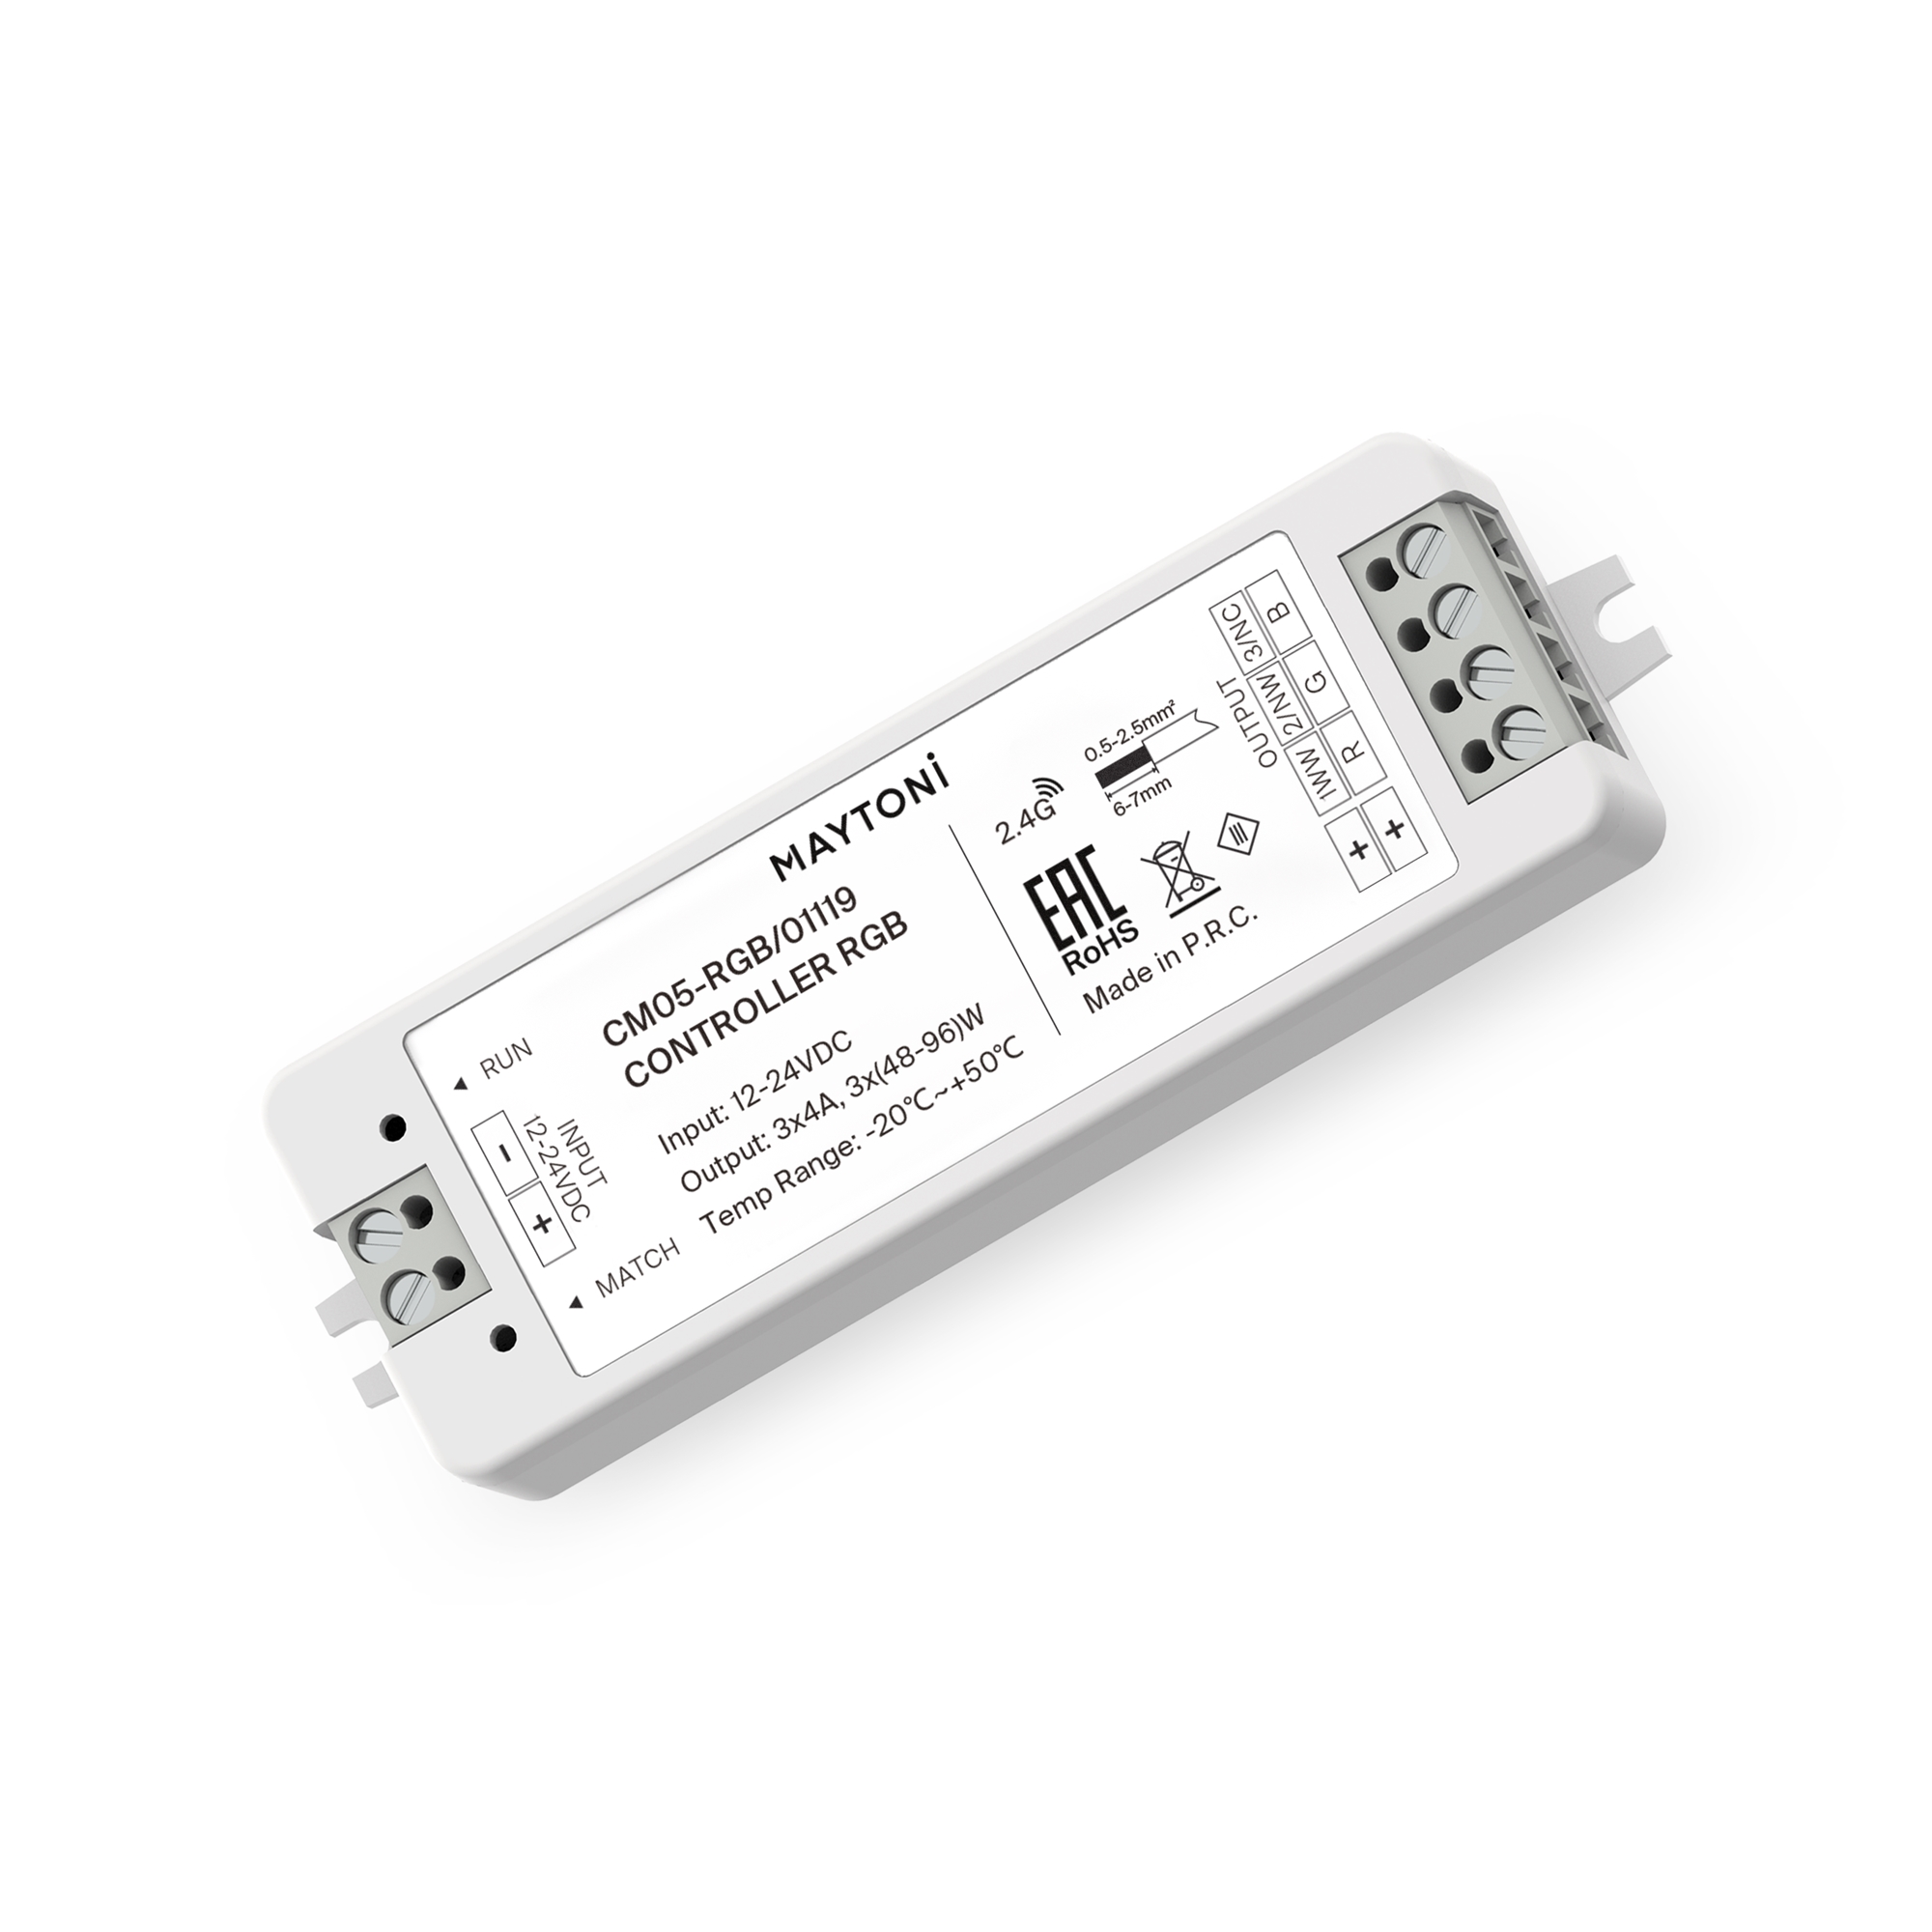 Контроллер для светодиодной ленты RGB 144Вт/288Вт 01119 контроллер для светодиодной ленты эра